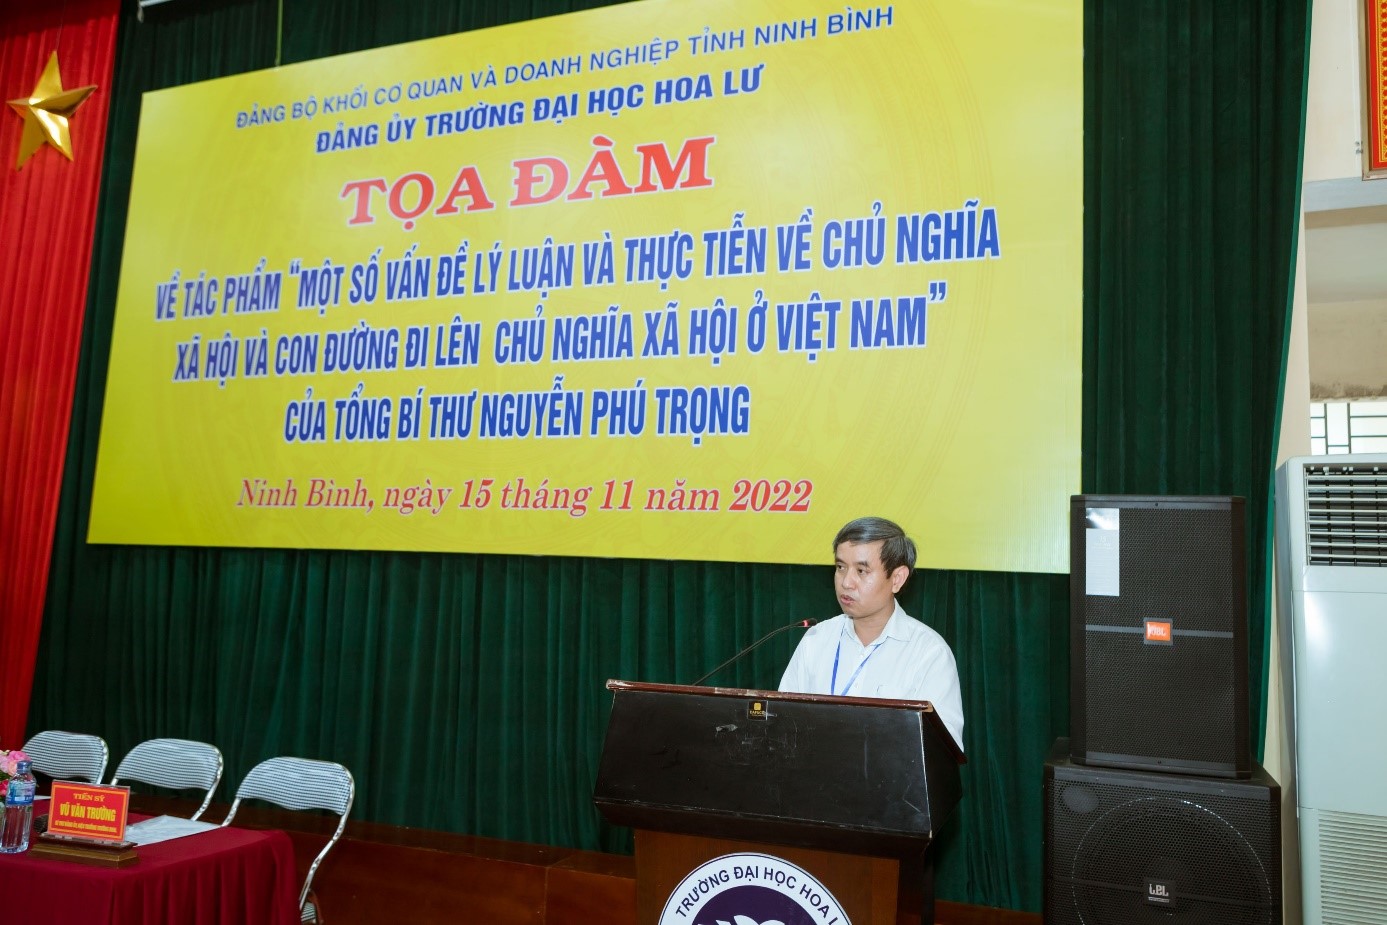 Tọa đàm về tác phẩm “Một số vấn đề lý luận và thực tiễn về chủ nghĩa xã hội và con đường đi lên chủ nghĩa xã hội ở Việt Nam” của Tổng Bí thư Nguyễn Phú Trọng